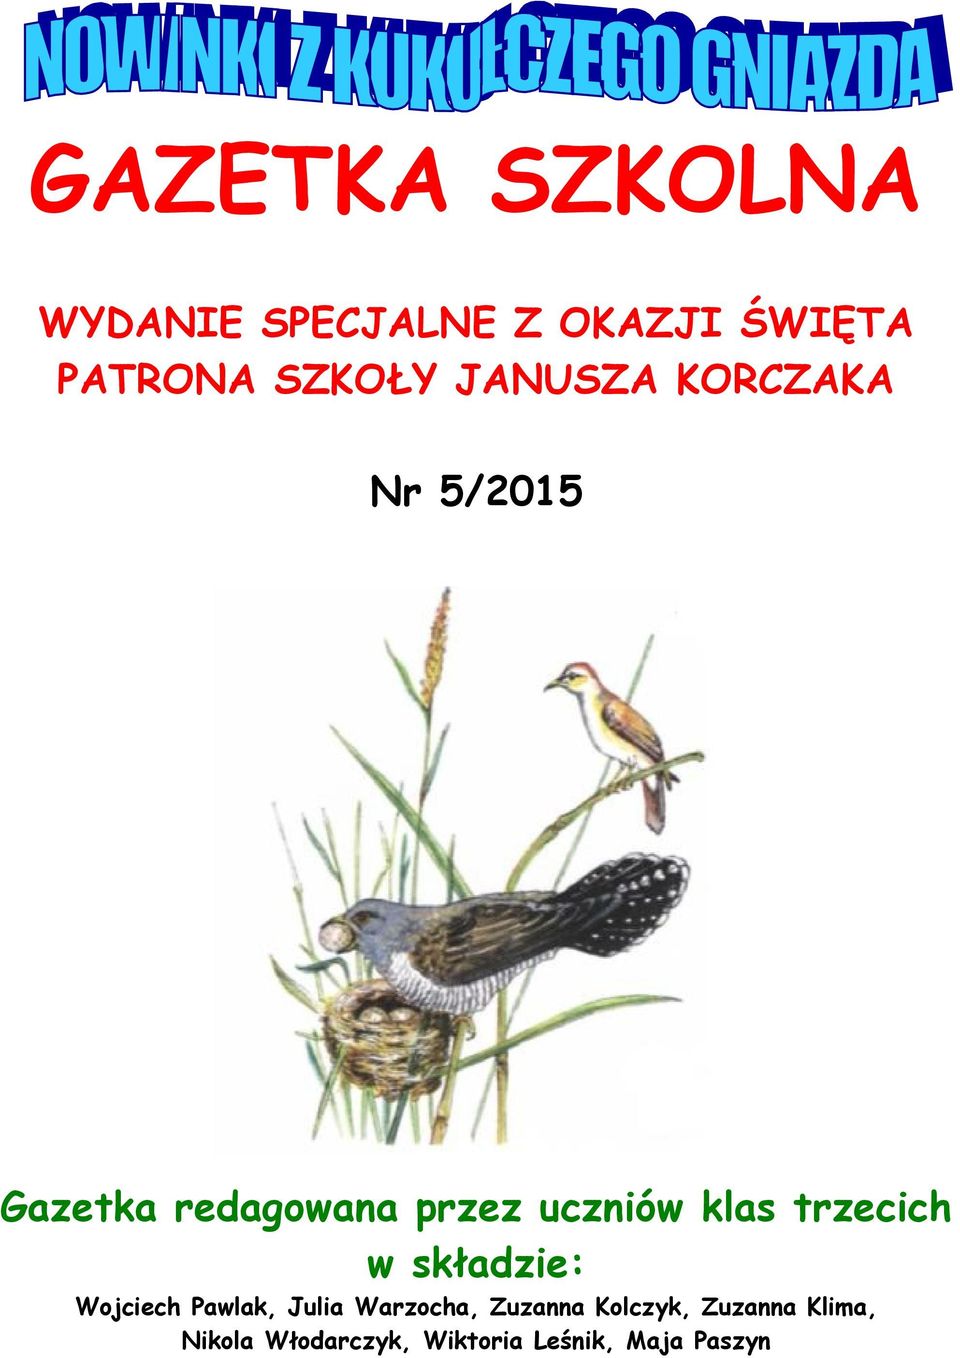 trzecich w składzie: Wojciech Pawlak, Julia Warzocha, Zuzanna